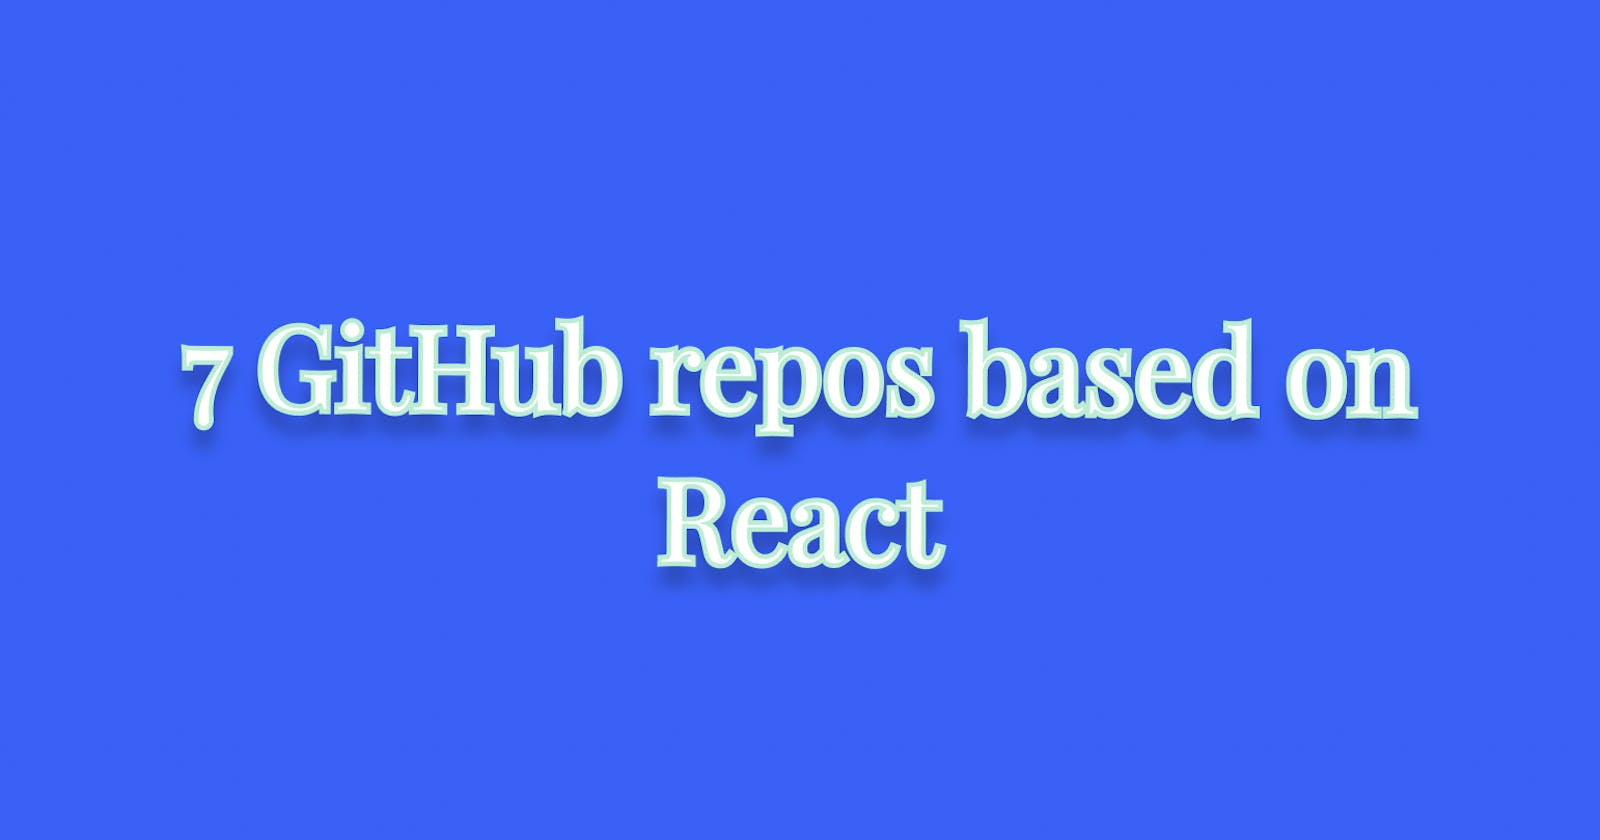 7 GitHub repos based on React